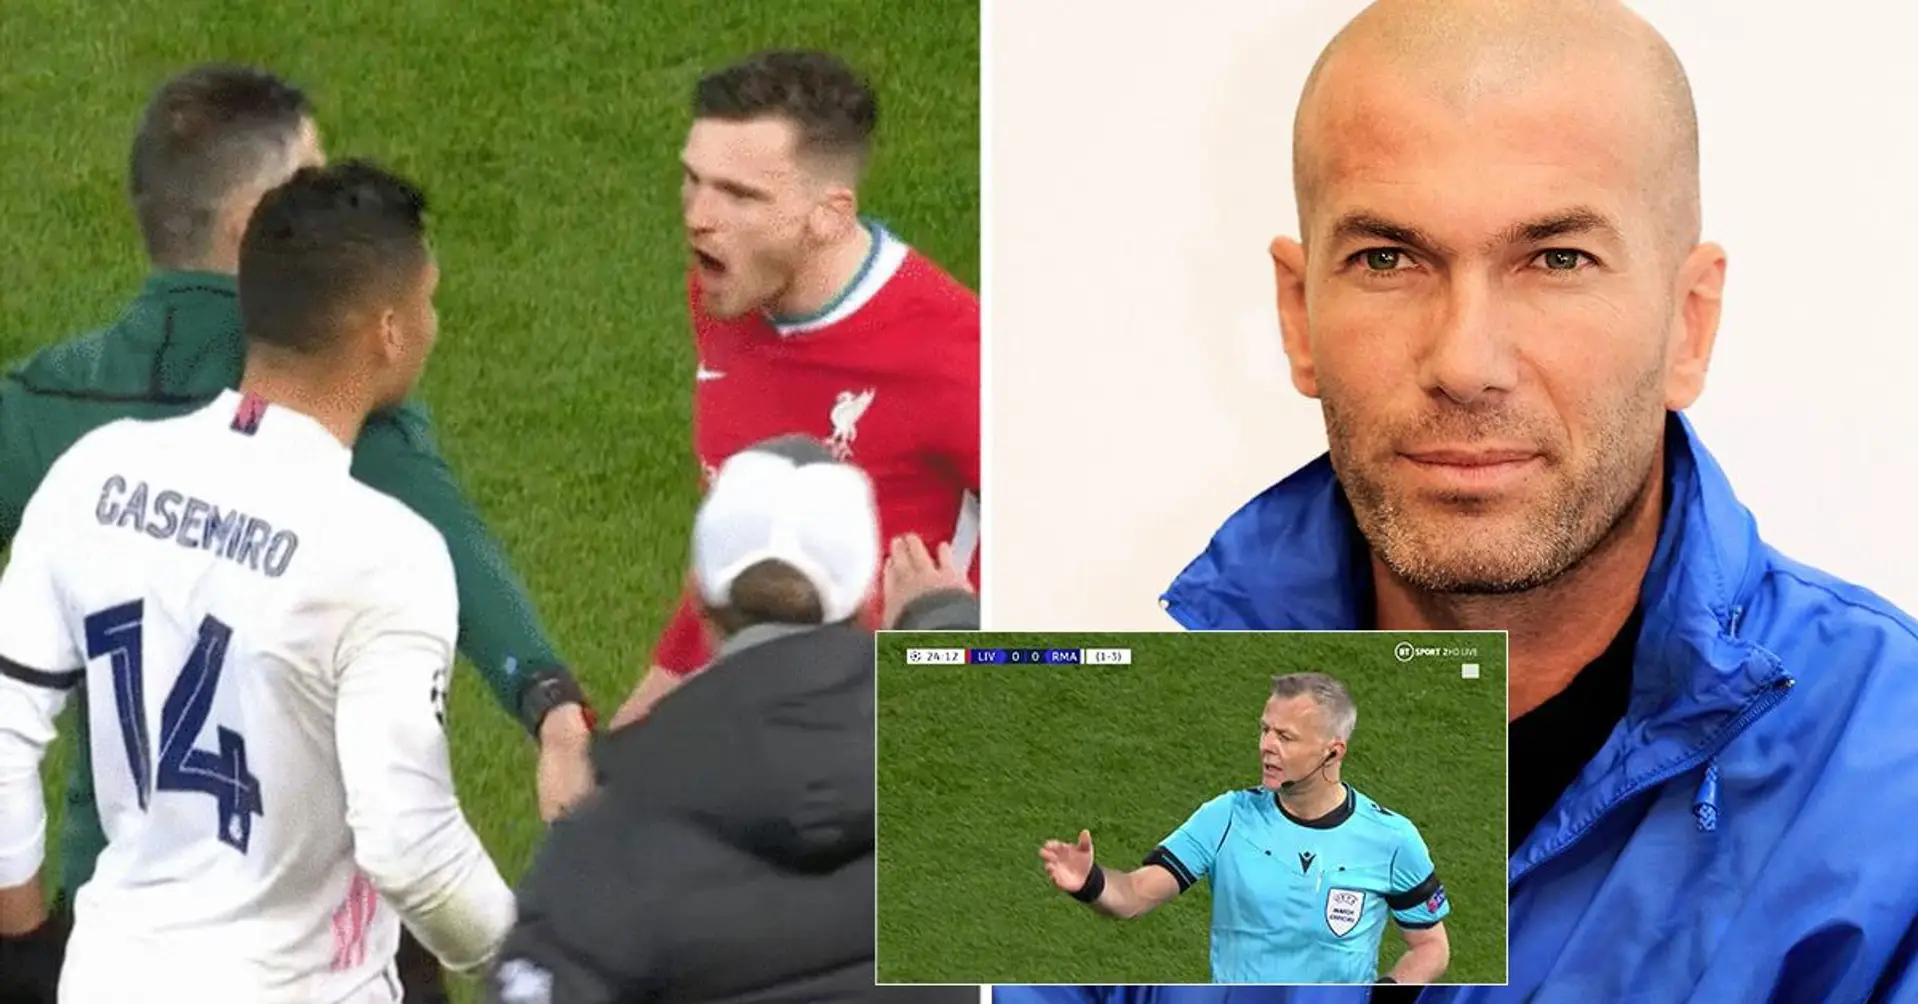 Le telecamere pizzicano Zidane sorridere soddisfatto  quando Casemiro litiga con Andy Robertson